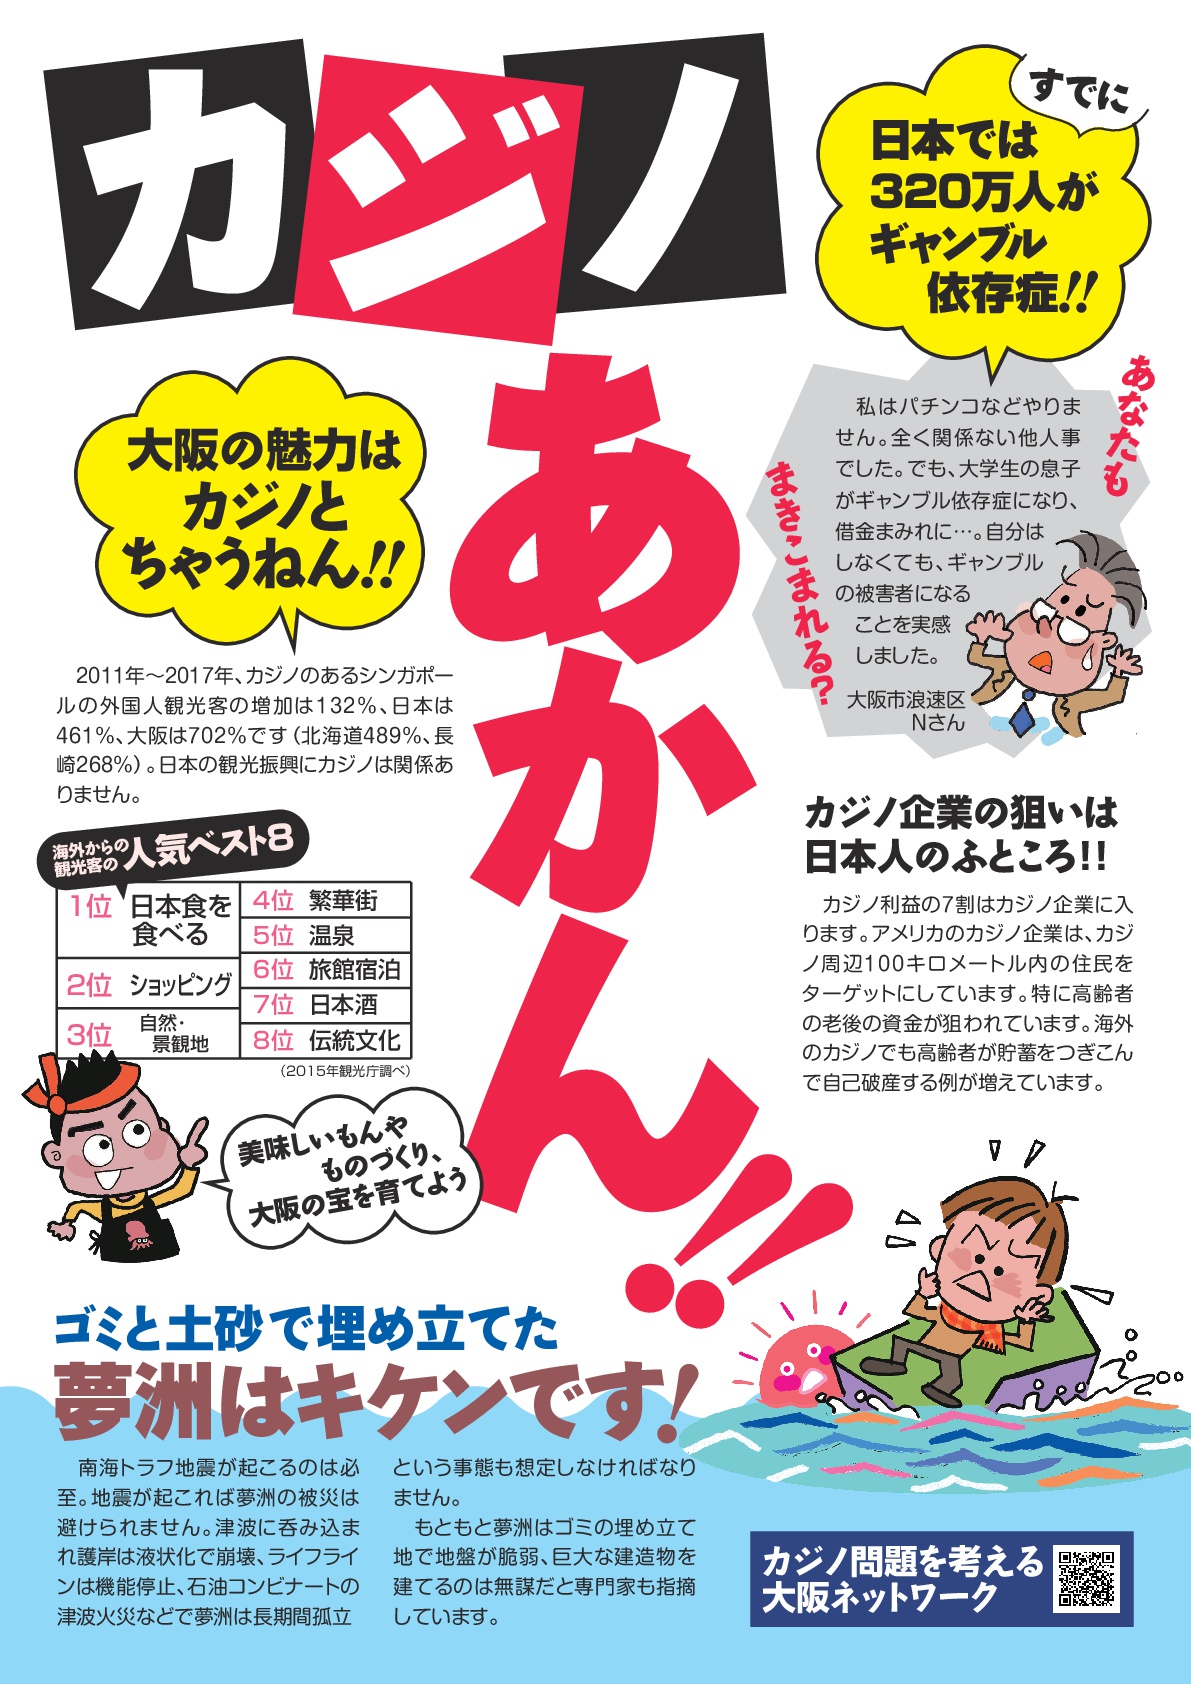 宣伝チラシ 19年2月発行 カジノに反対する大阪連絡会